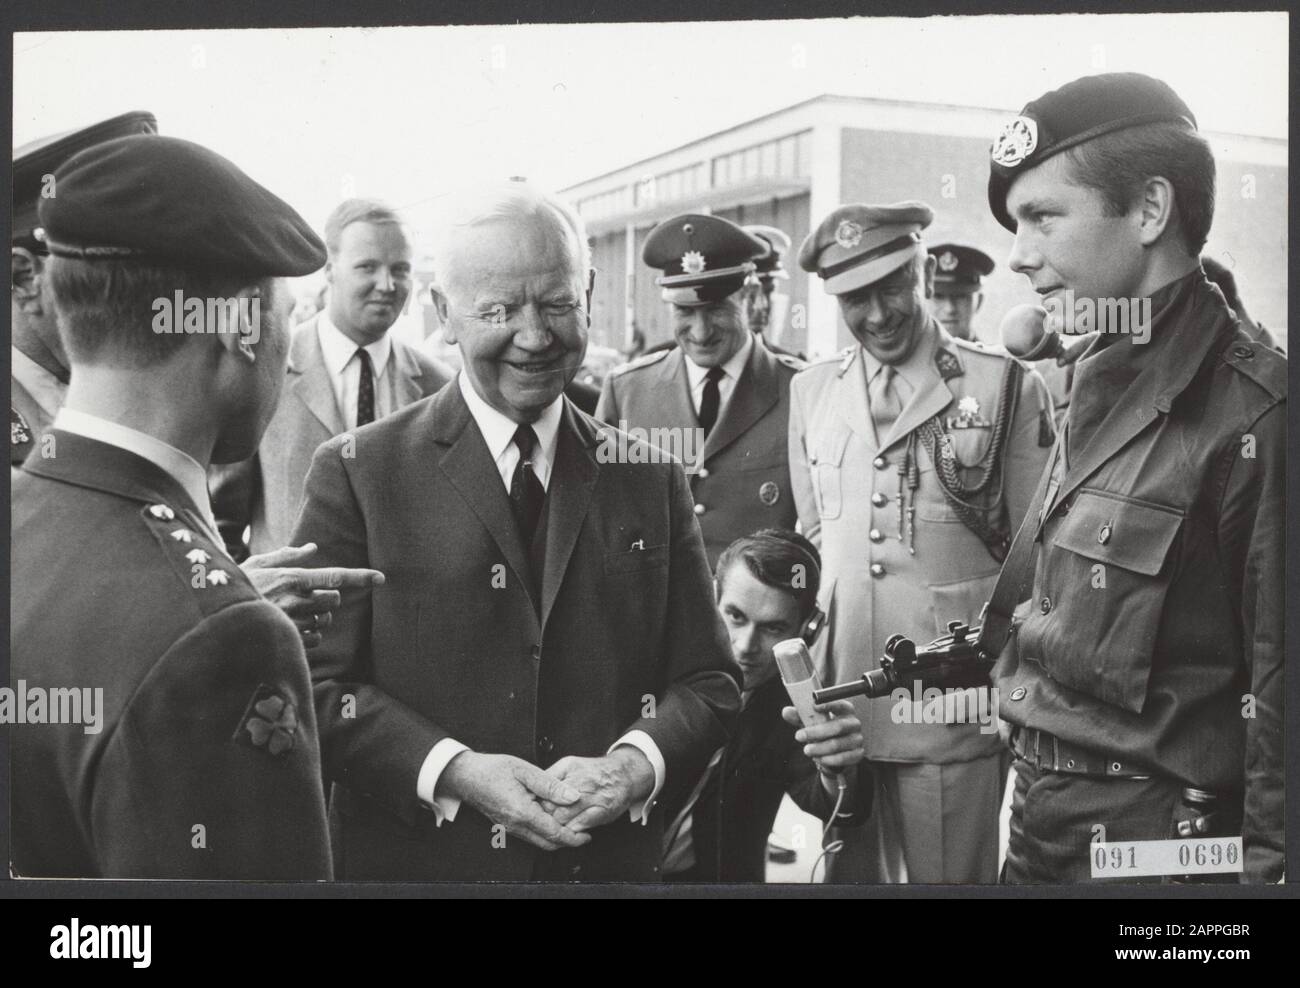 Le président allemand visite des soldats néerlandais Date: 21 juillet 1967 lieu: Allemagne, Seedorf mots clés: Visites, militaires, présidents Nom personnel: Lubke, H., Verre, F, v. : Koch, Eric/Anefo Banque D'Images